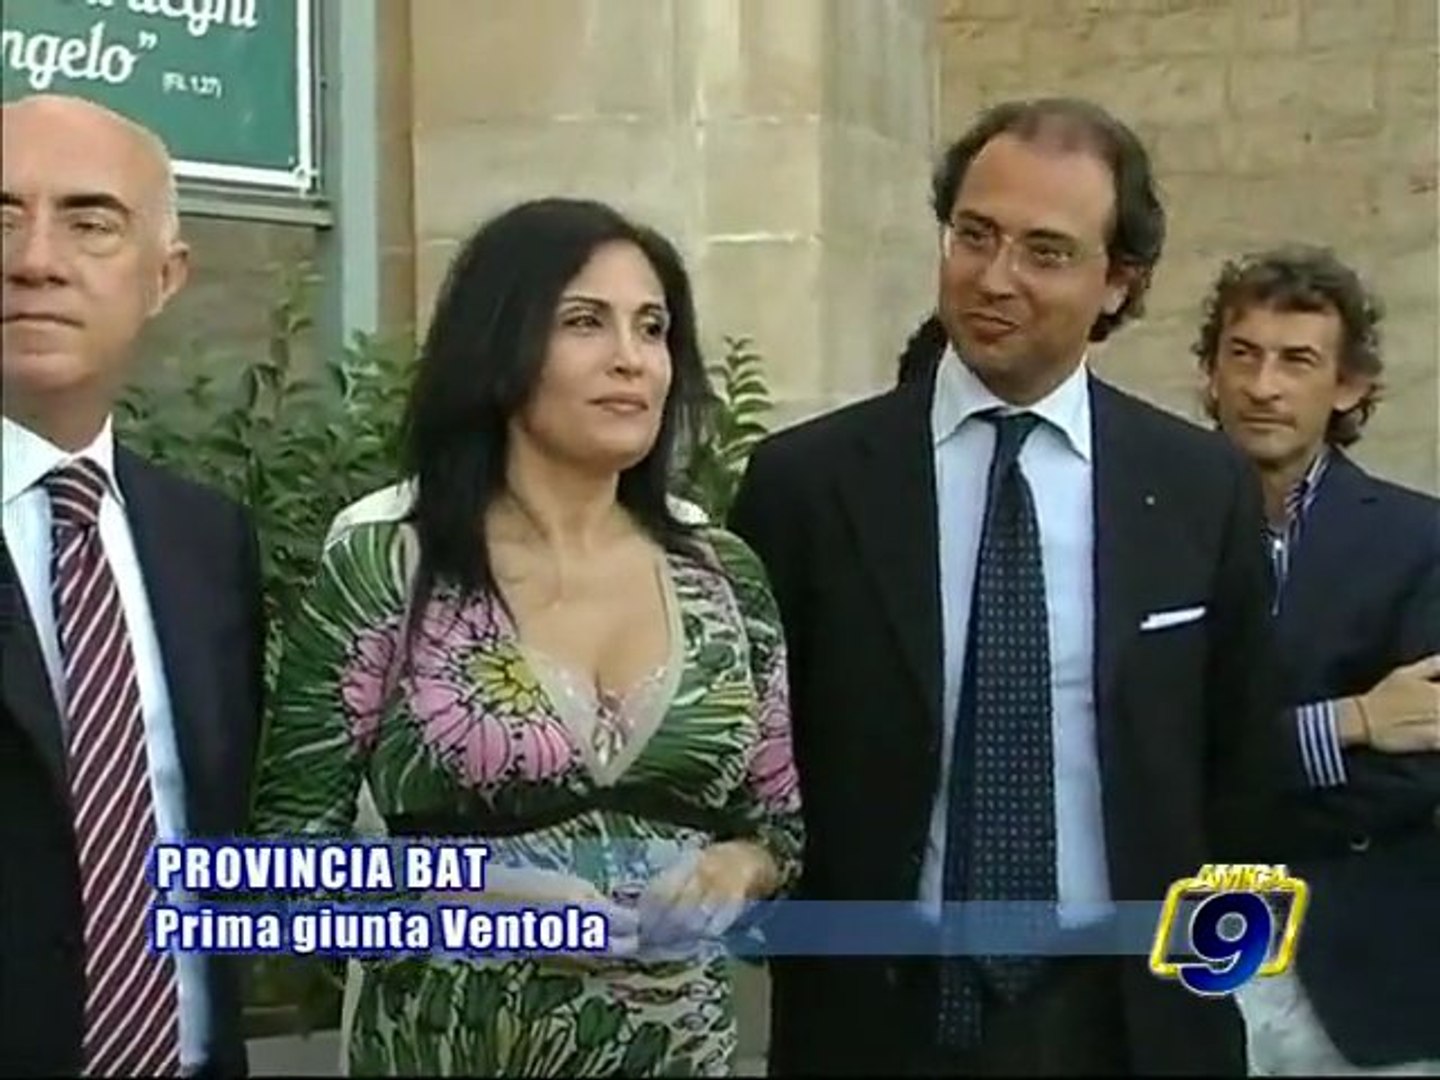 PROVINCIA BAT. Presentata la prima storica Giunta della Provincia di  Barletta - Andria - Trani - Video Dailymotion